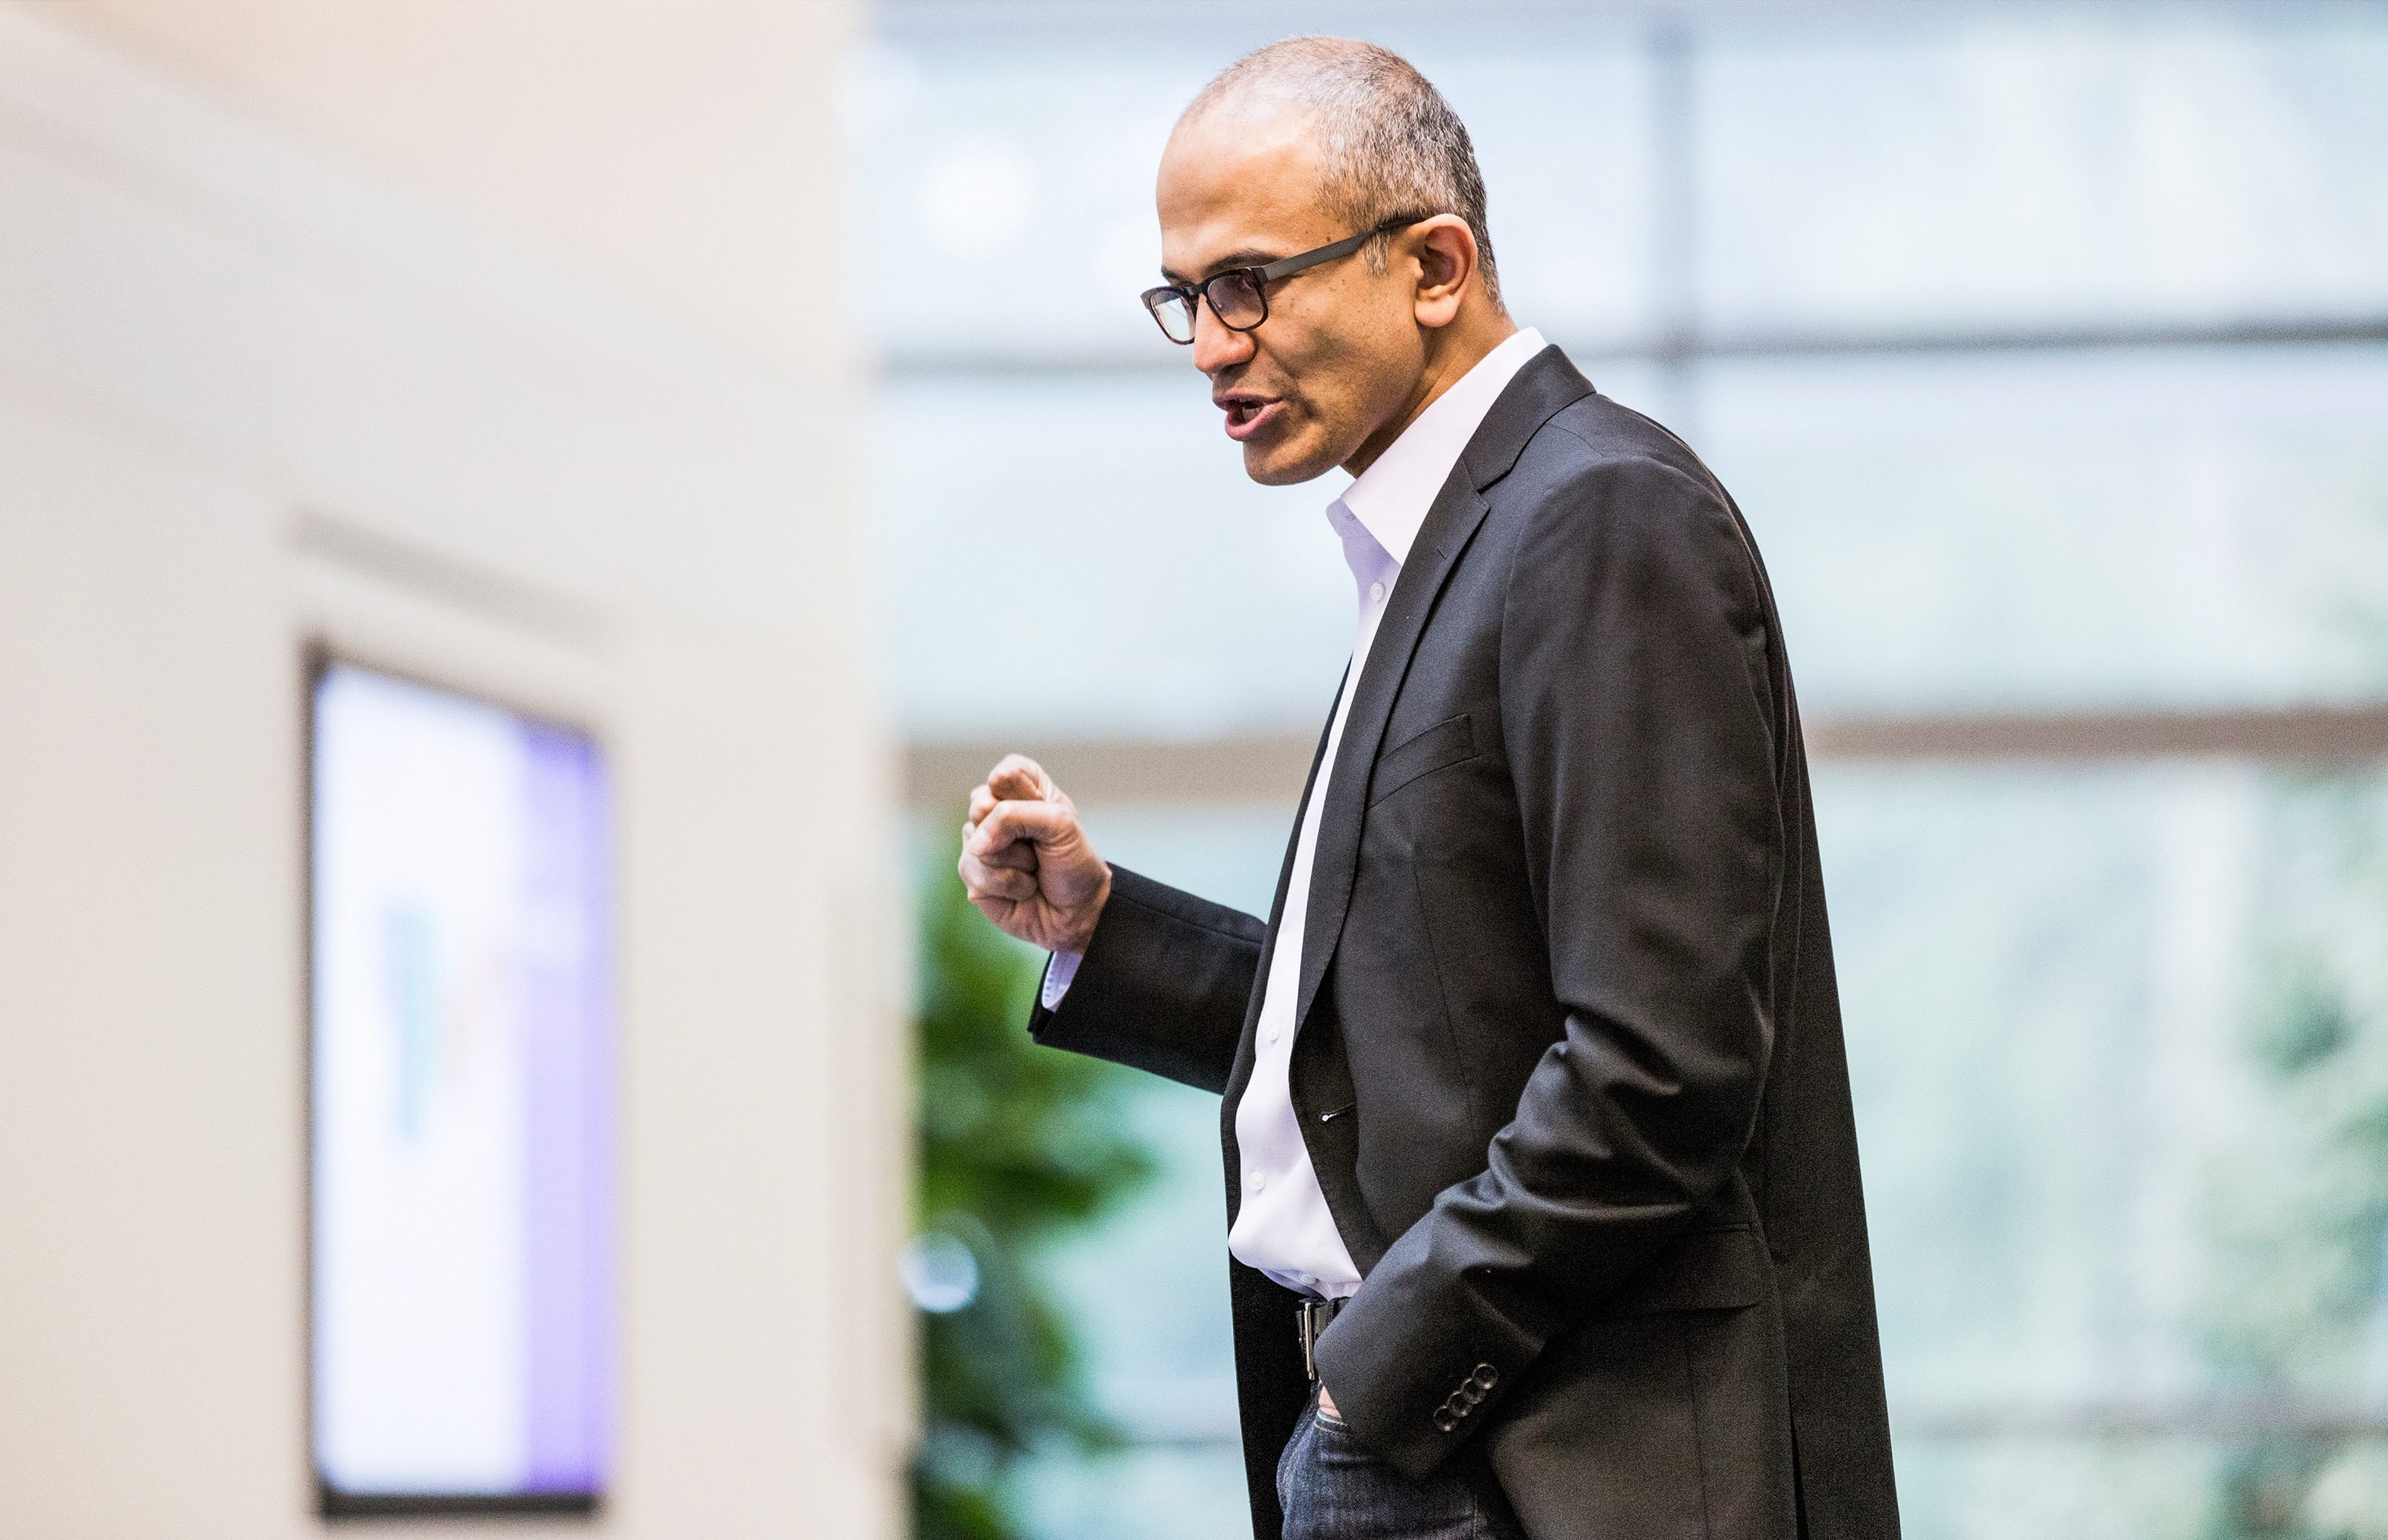 Сатя Надела e новият главен изпълнителен директор на Microsoft